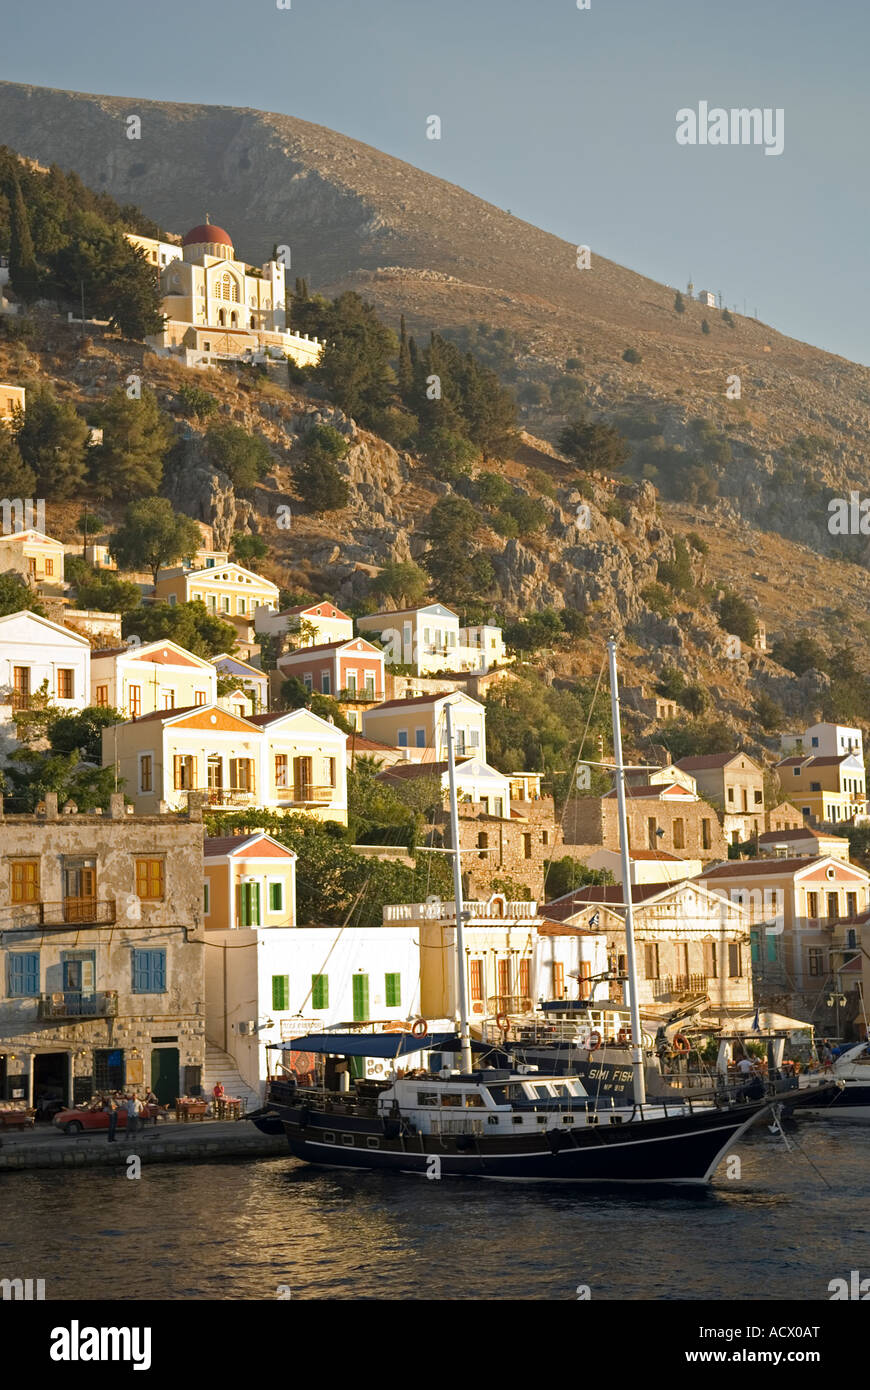 L'île de Simi, les maisons et le port, la Grèce. Banque D'Images